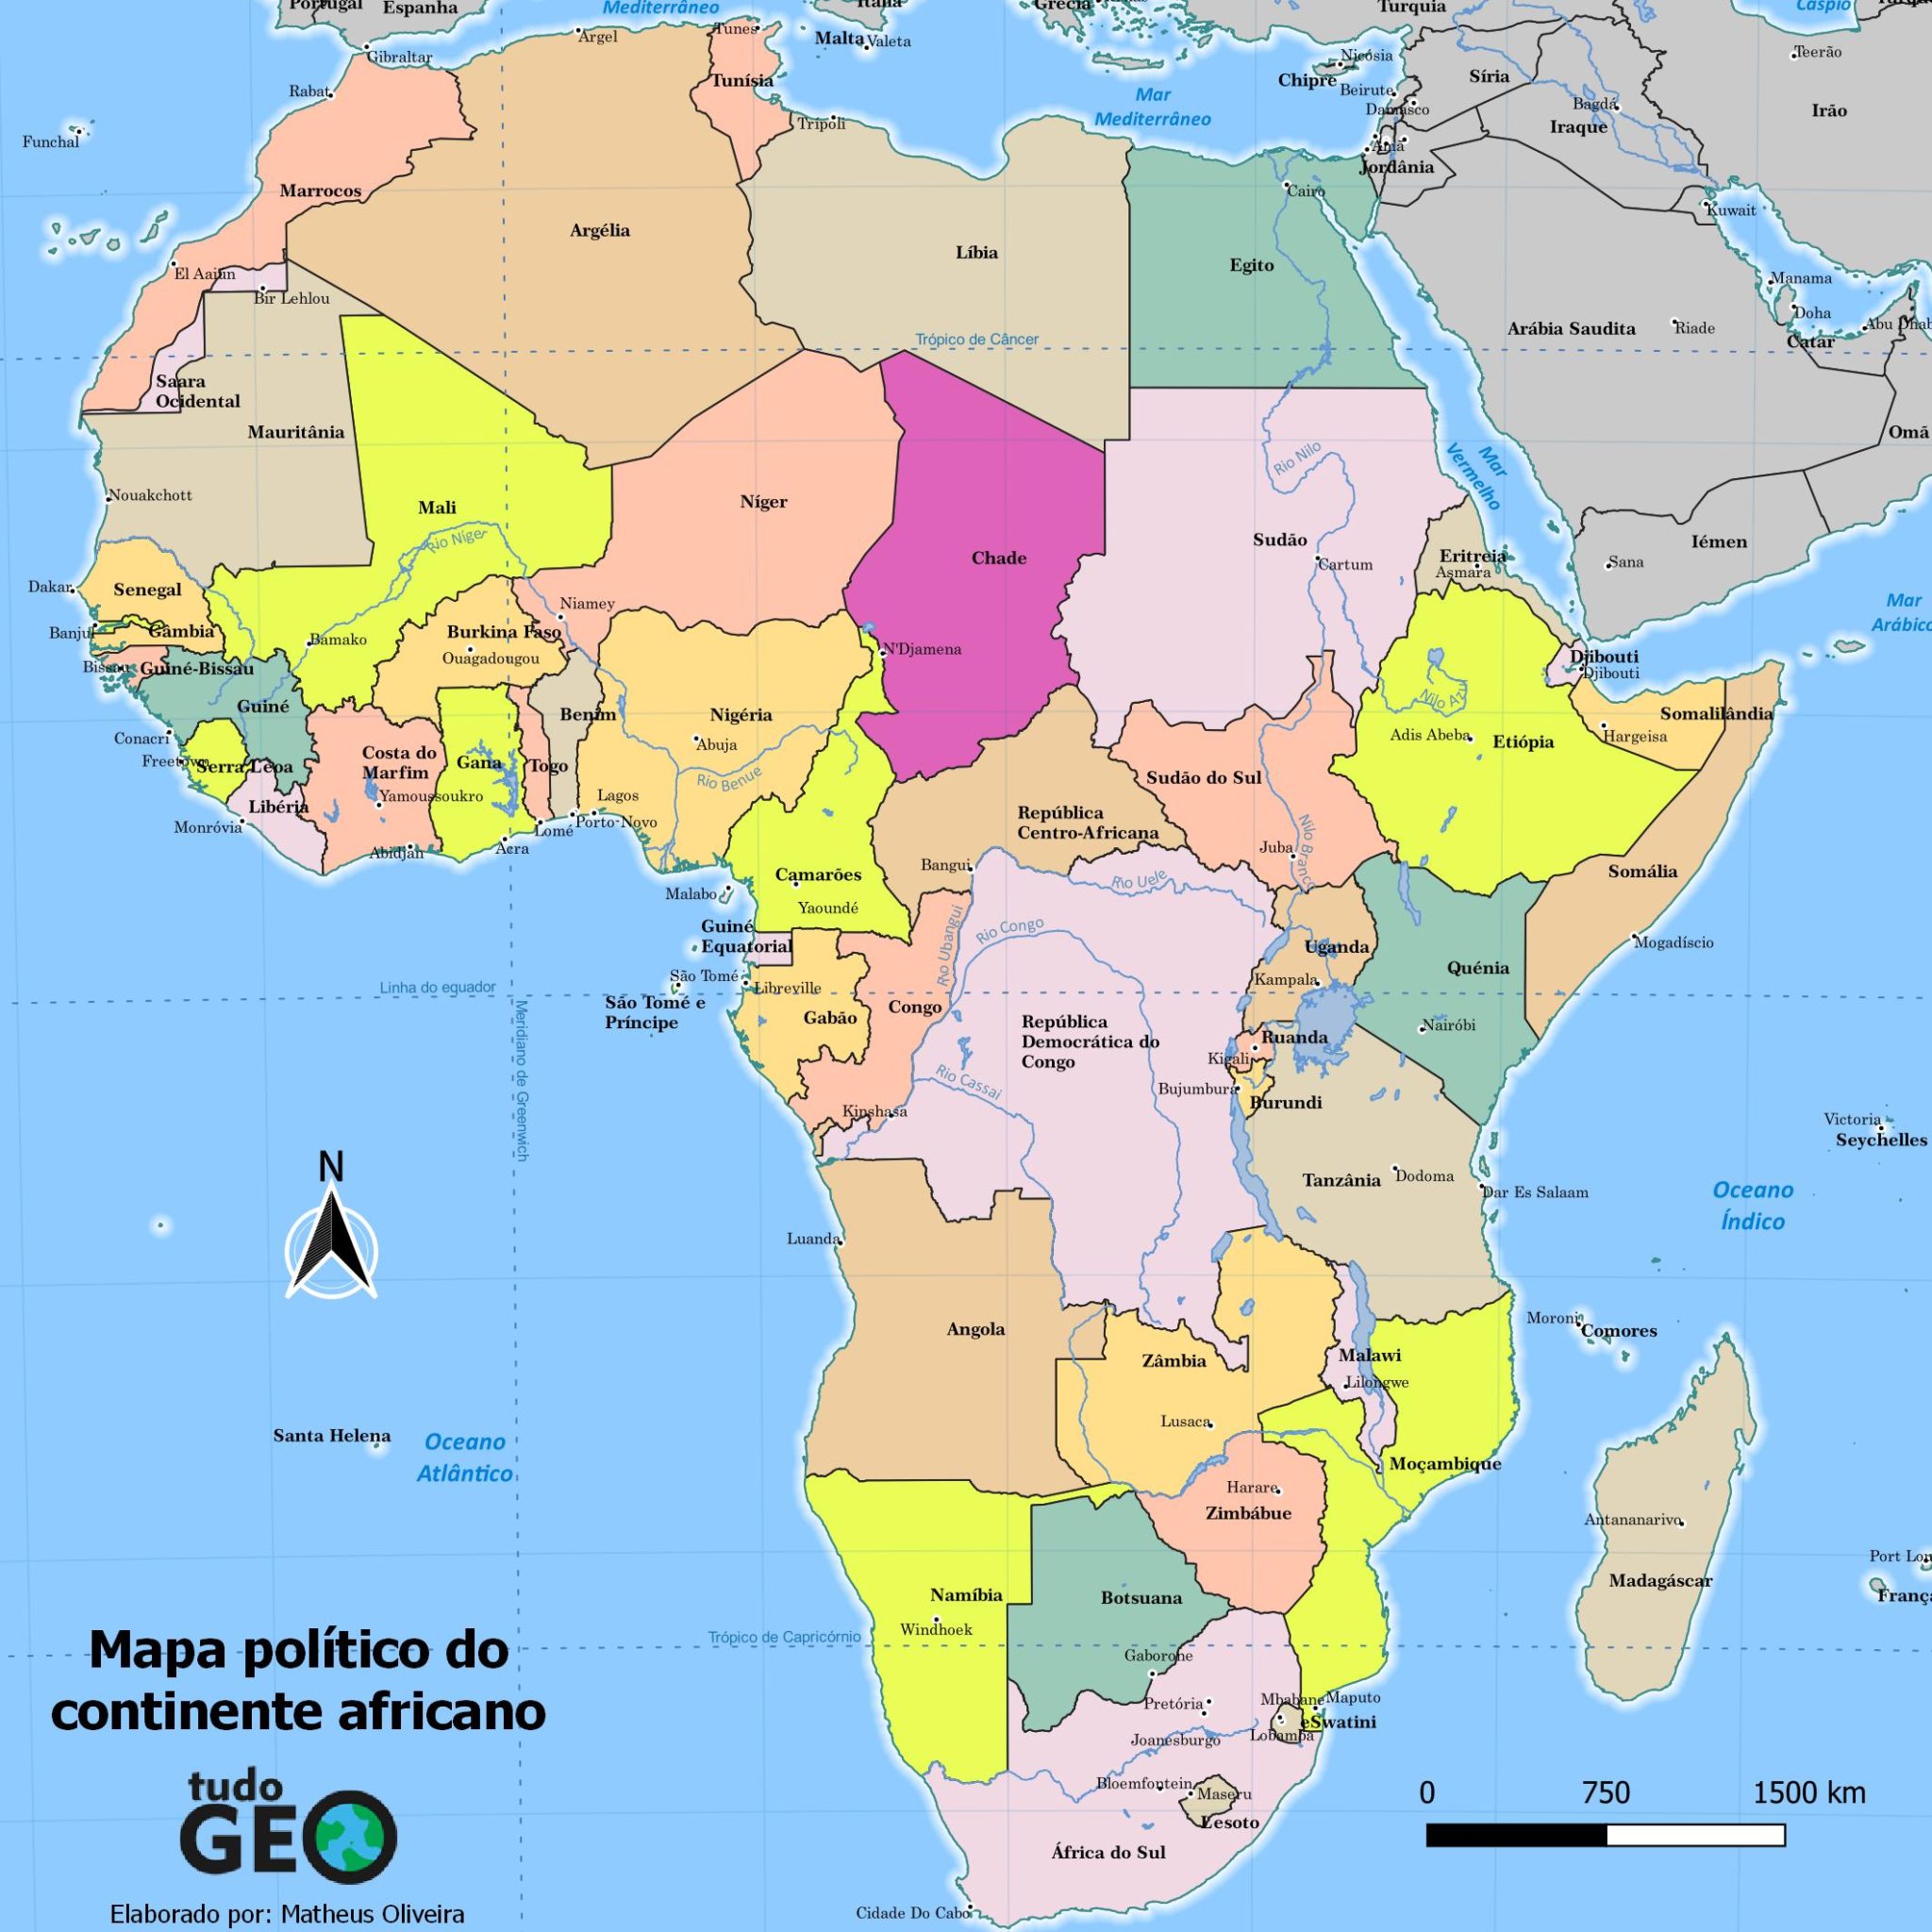 Mapa político do continente africano